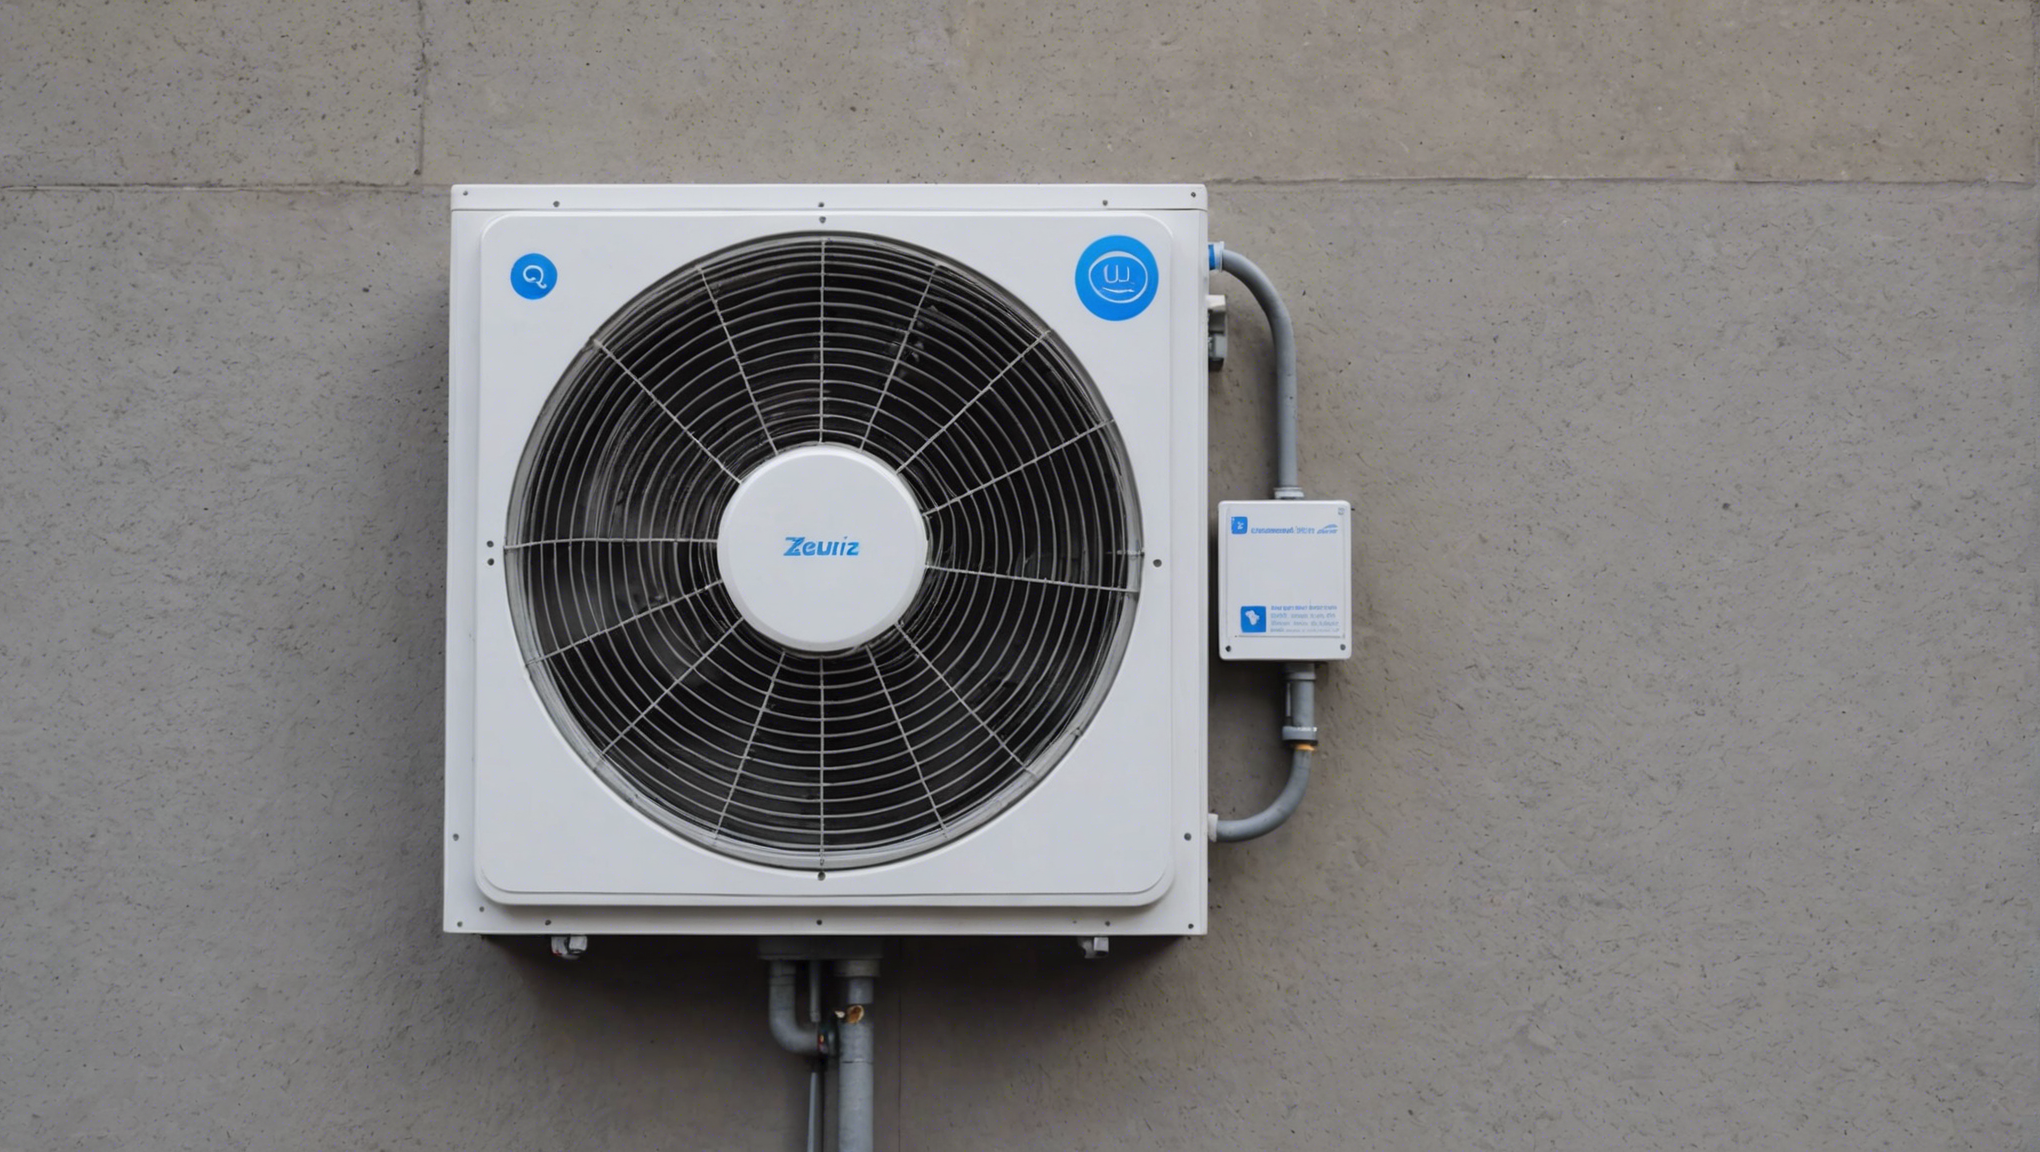 découvrez l'importance de la vérification de la ventilation et son impact sur la qualité de l'air intérieur. obtenez des conseils pour assurer un environnement sain et sécurisé.